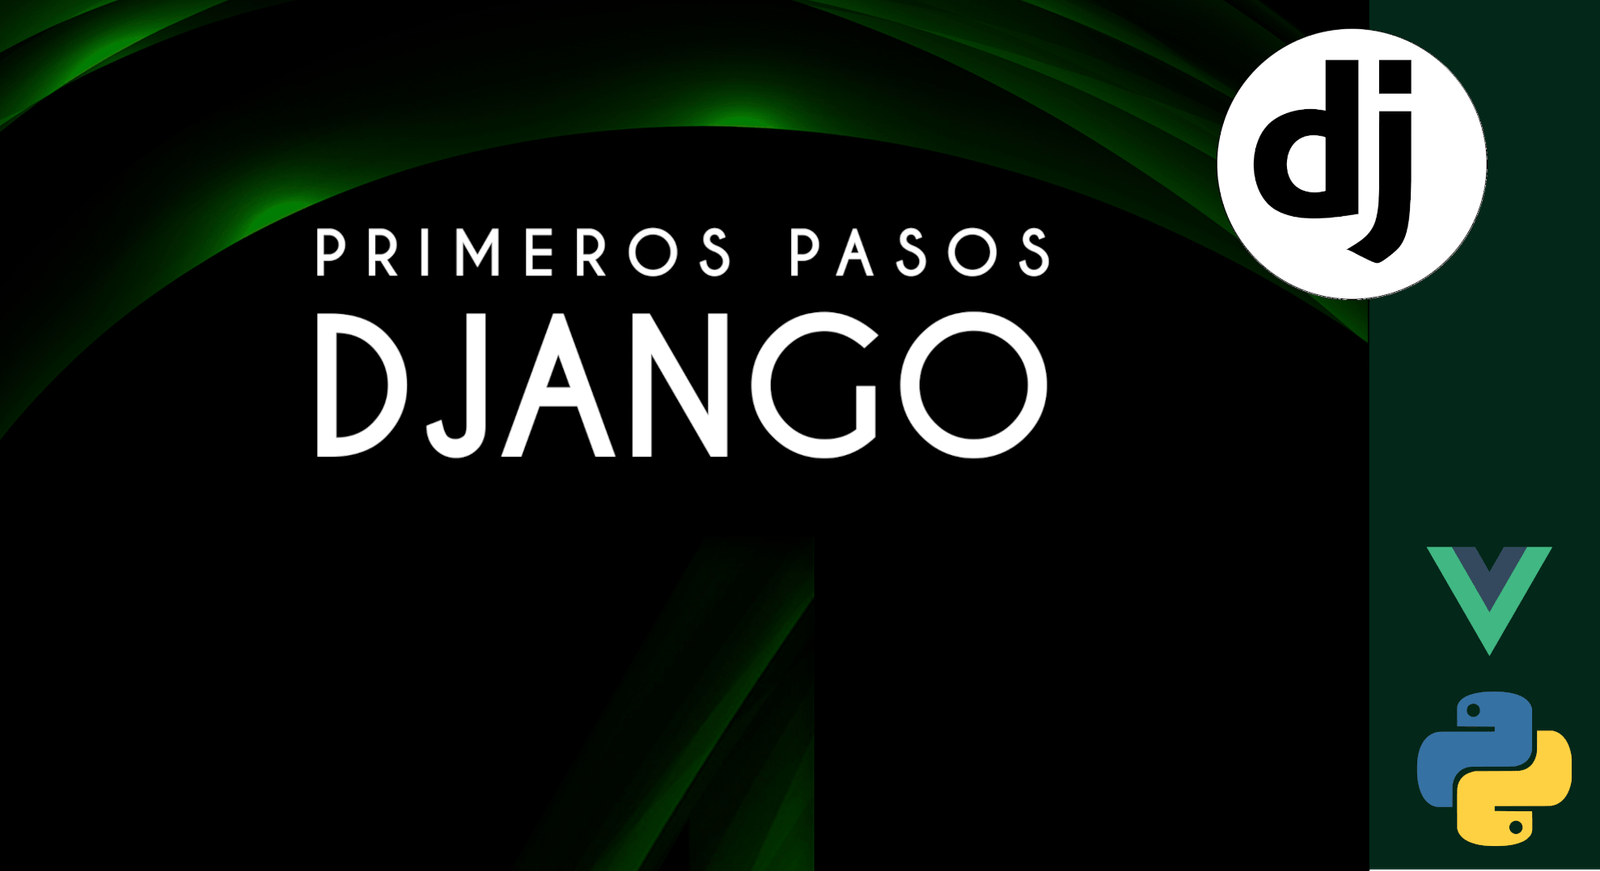  Primeros pasos con Django 5, domina el framework web para Python más popular